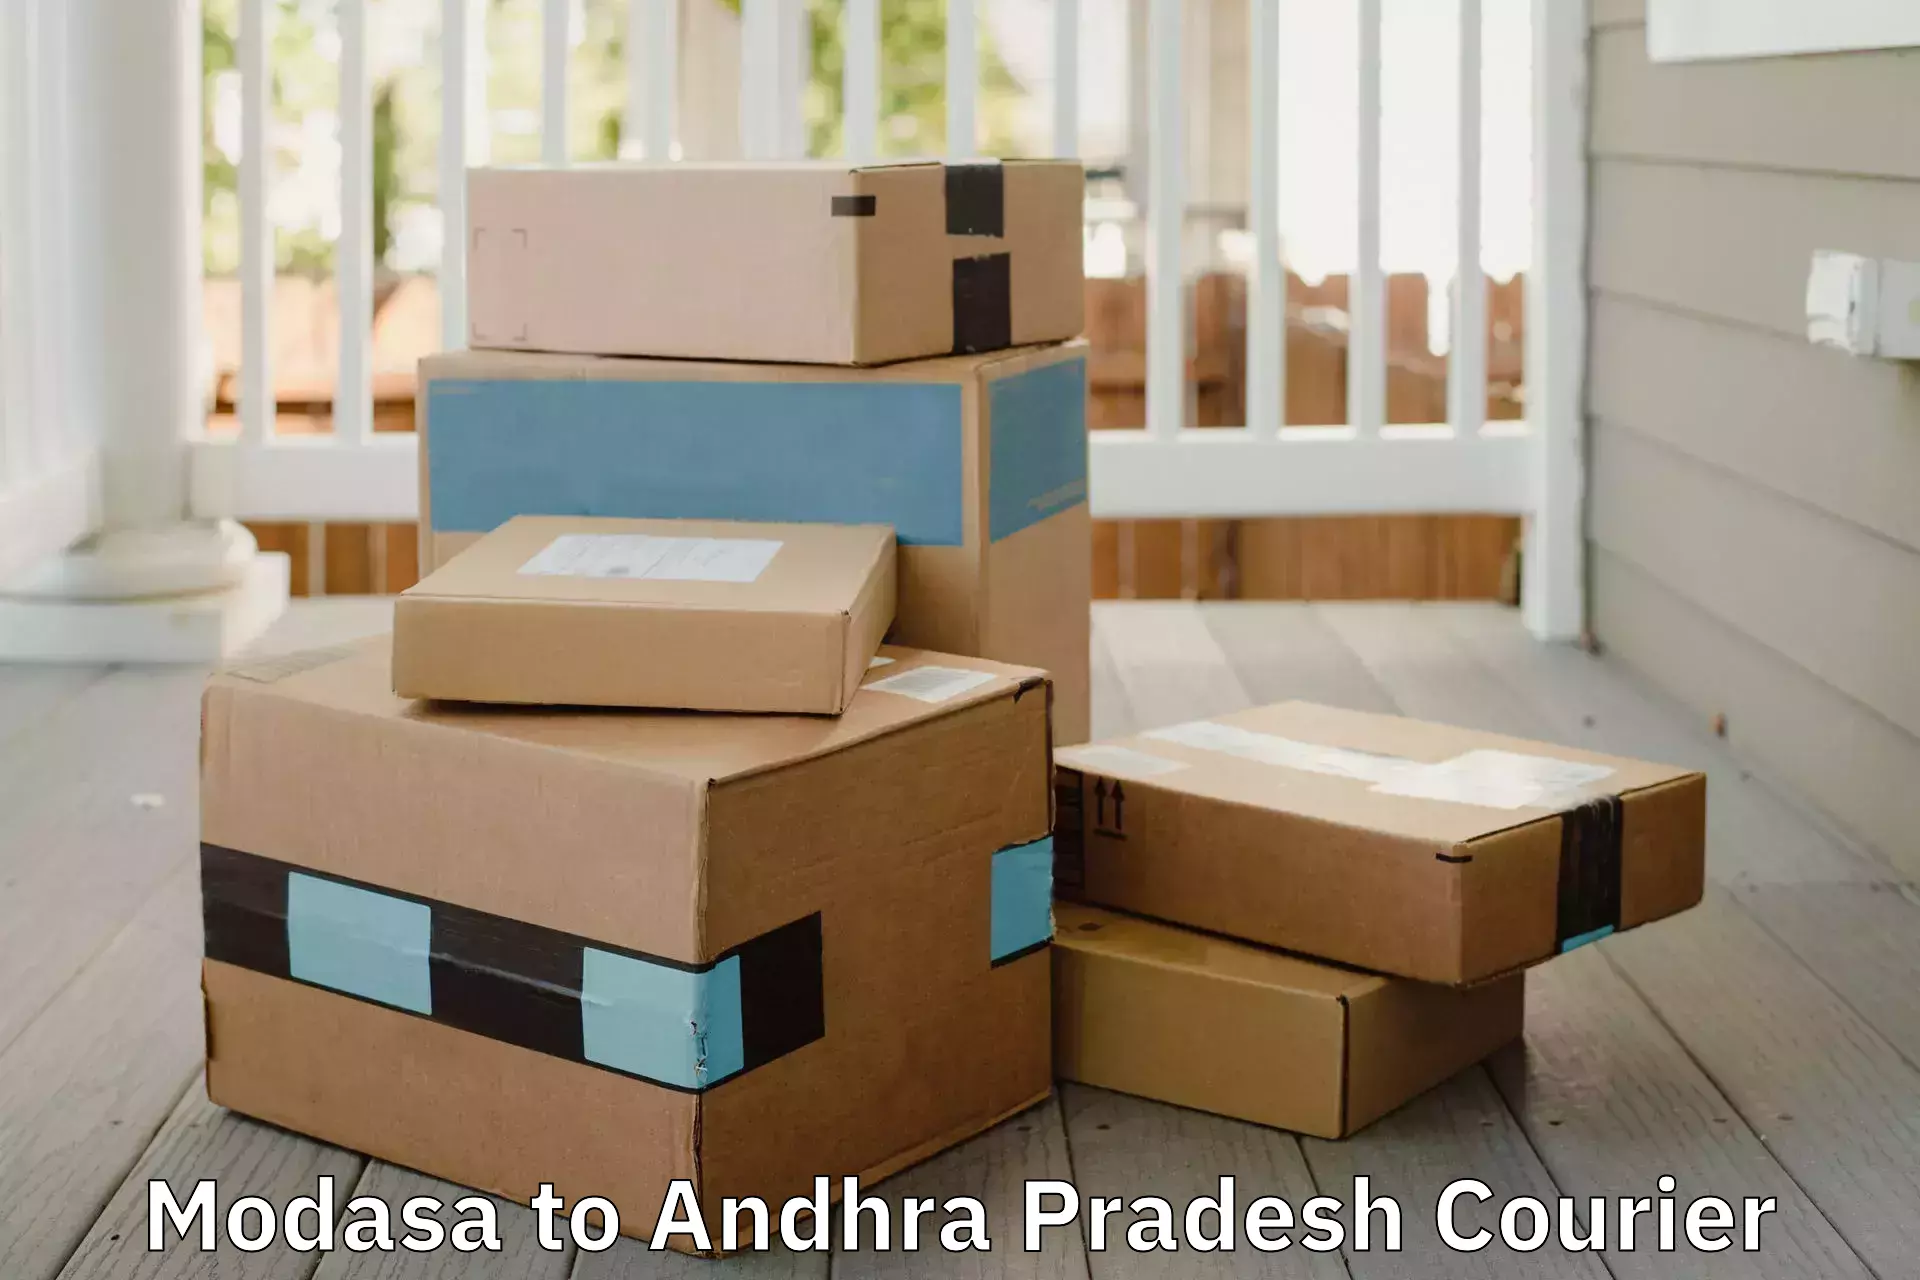 Moving and packing experts Modasa to Andhra Pradesh